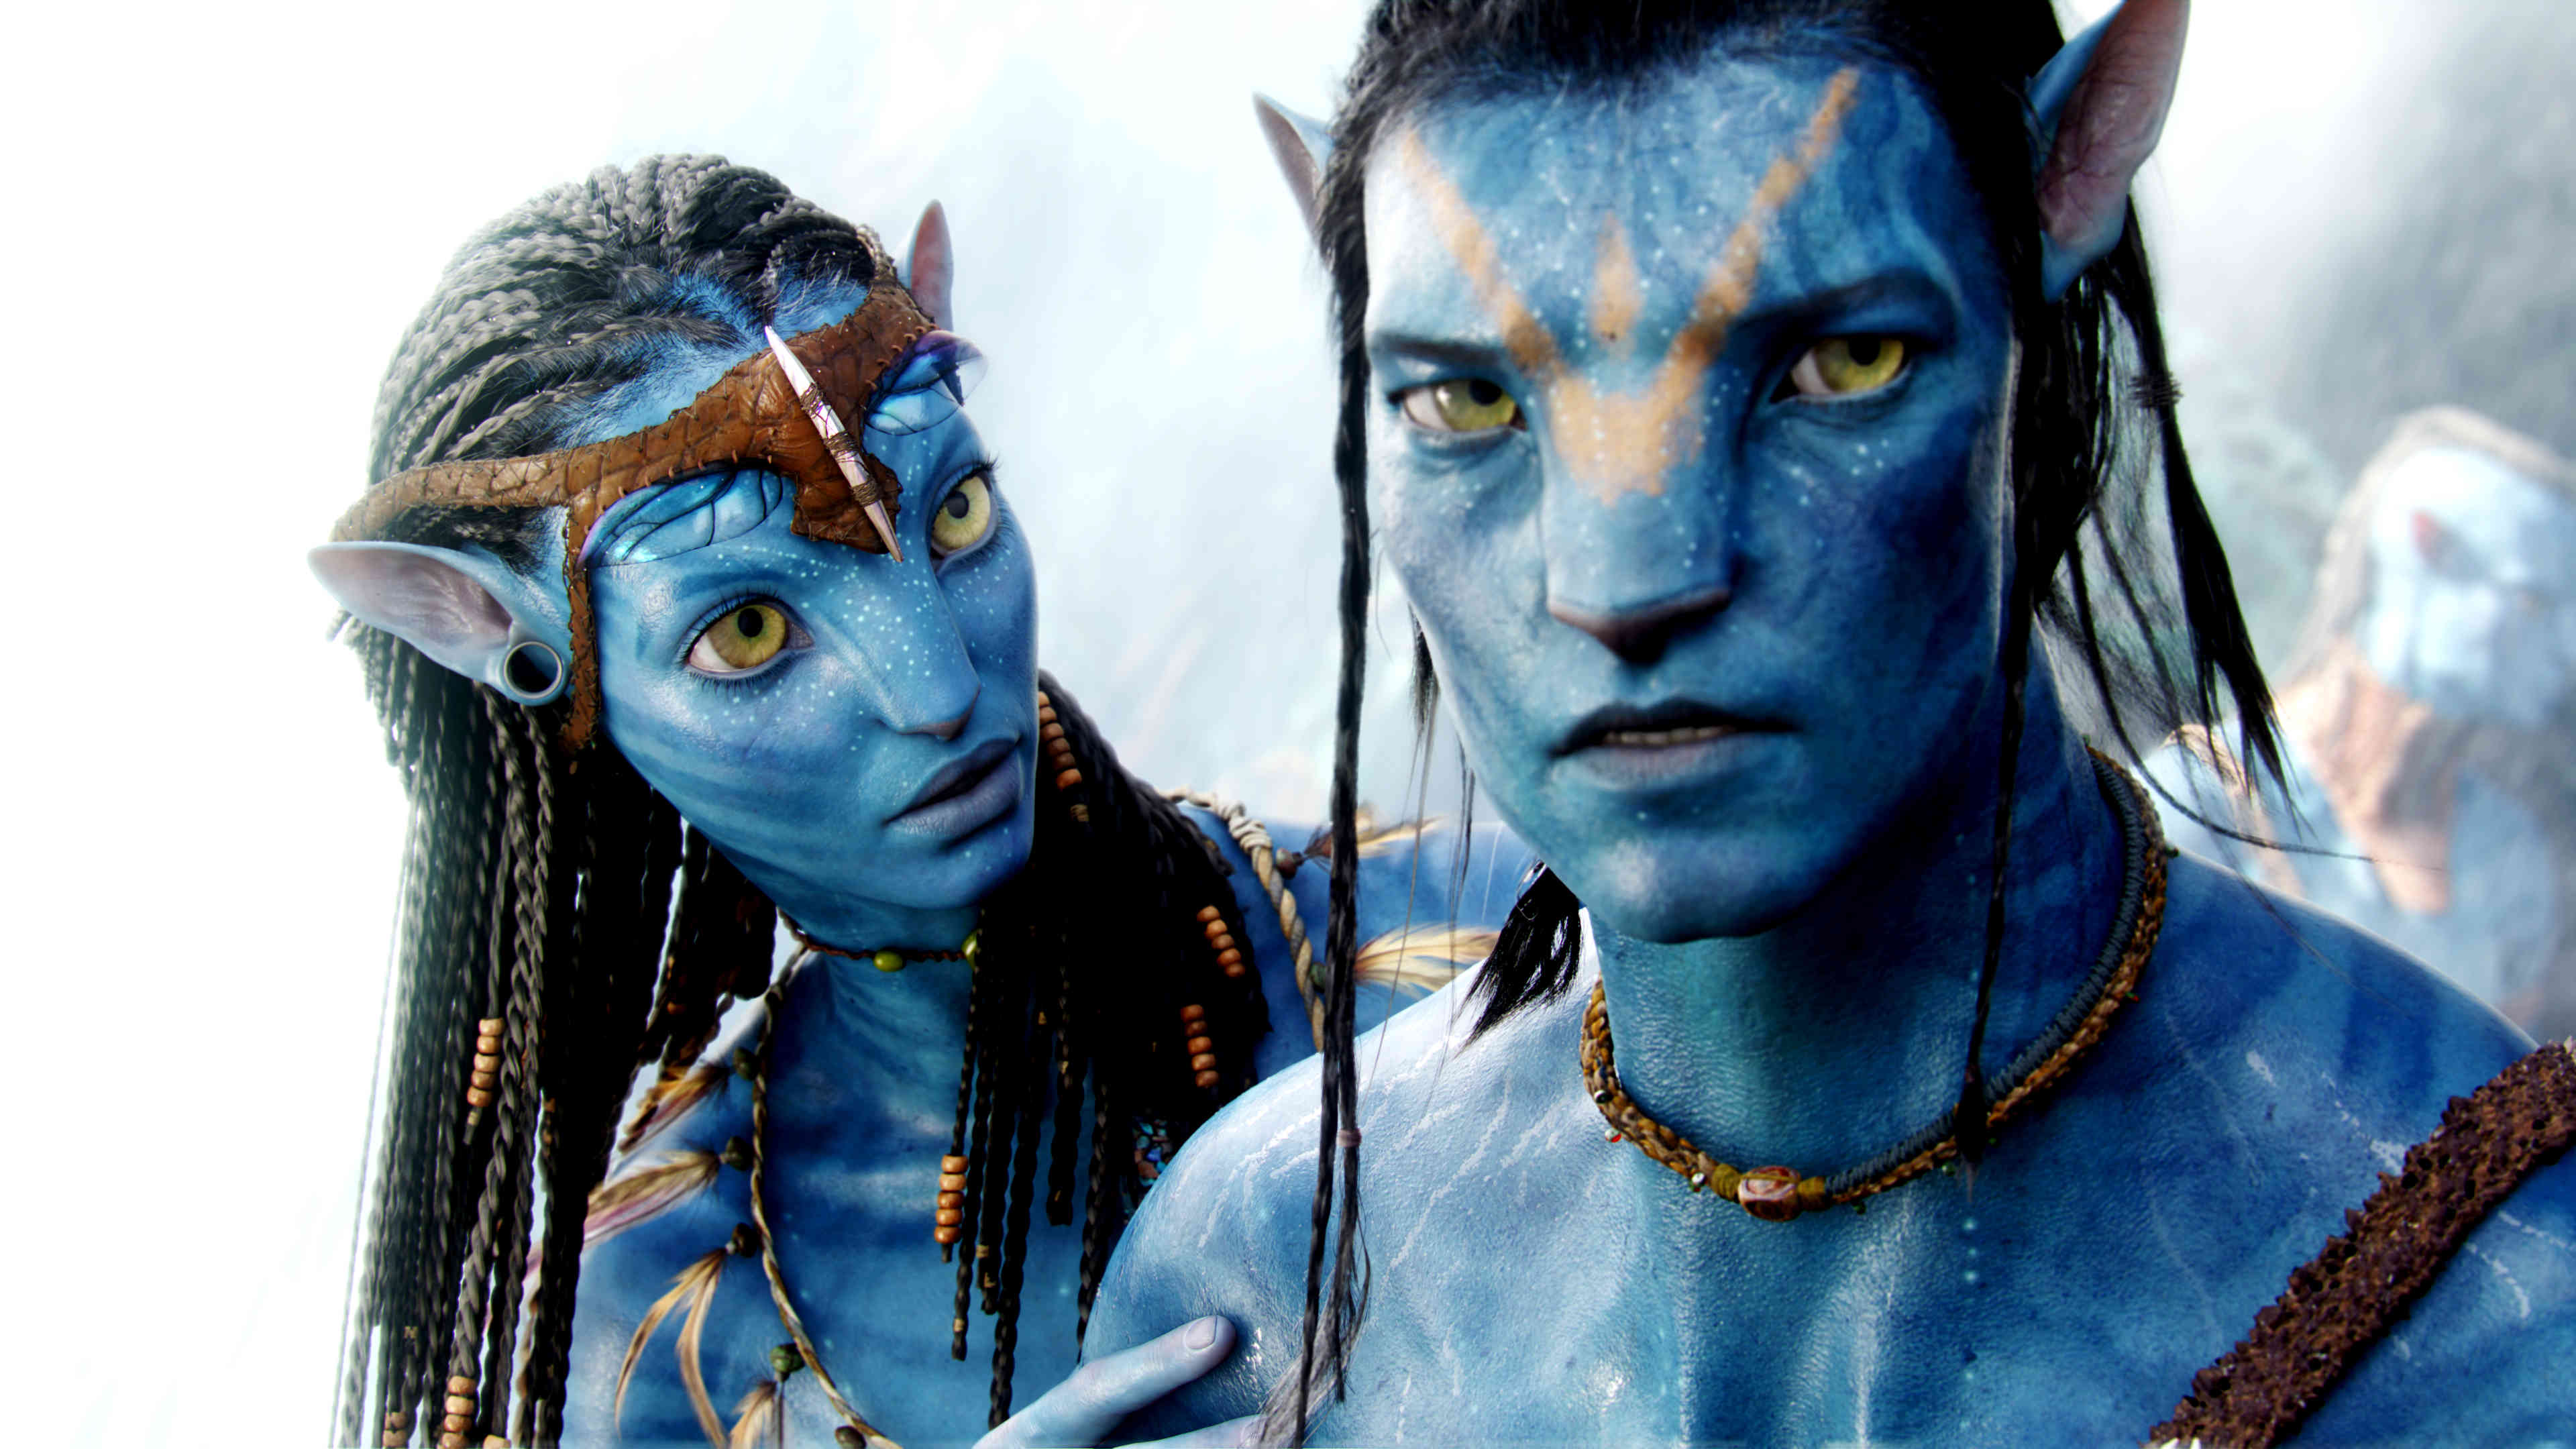 Fuentes De Informaci N Avatar Wallpaper 1080p